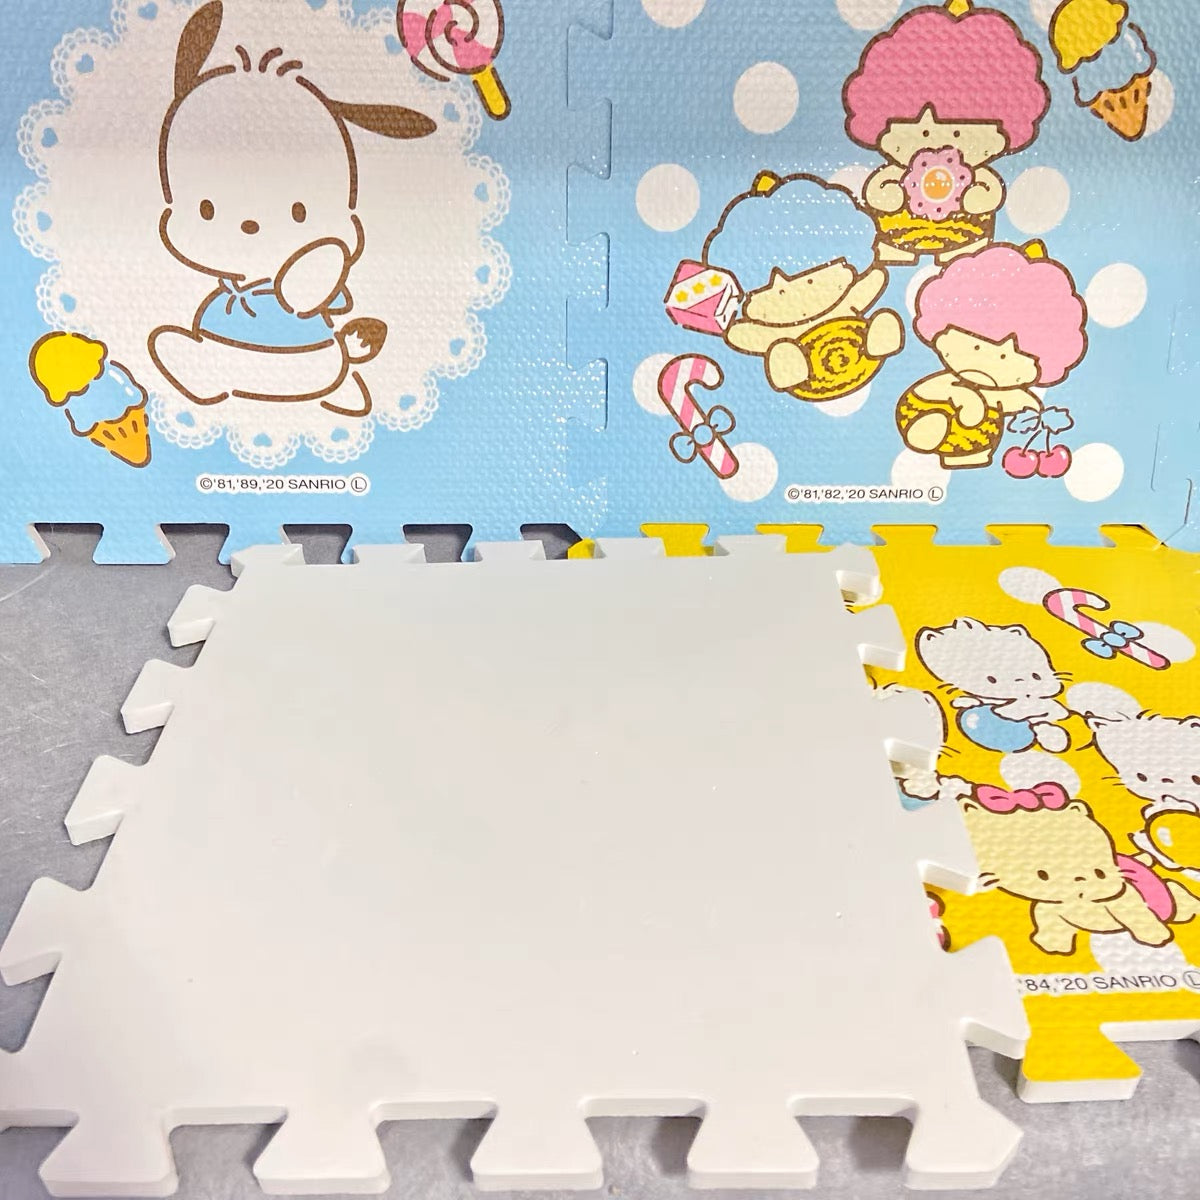 Sanrio Puzzle Floor Mat